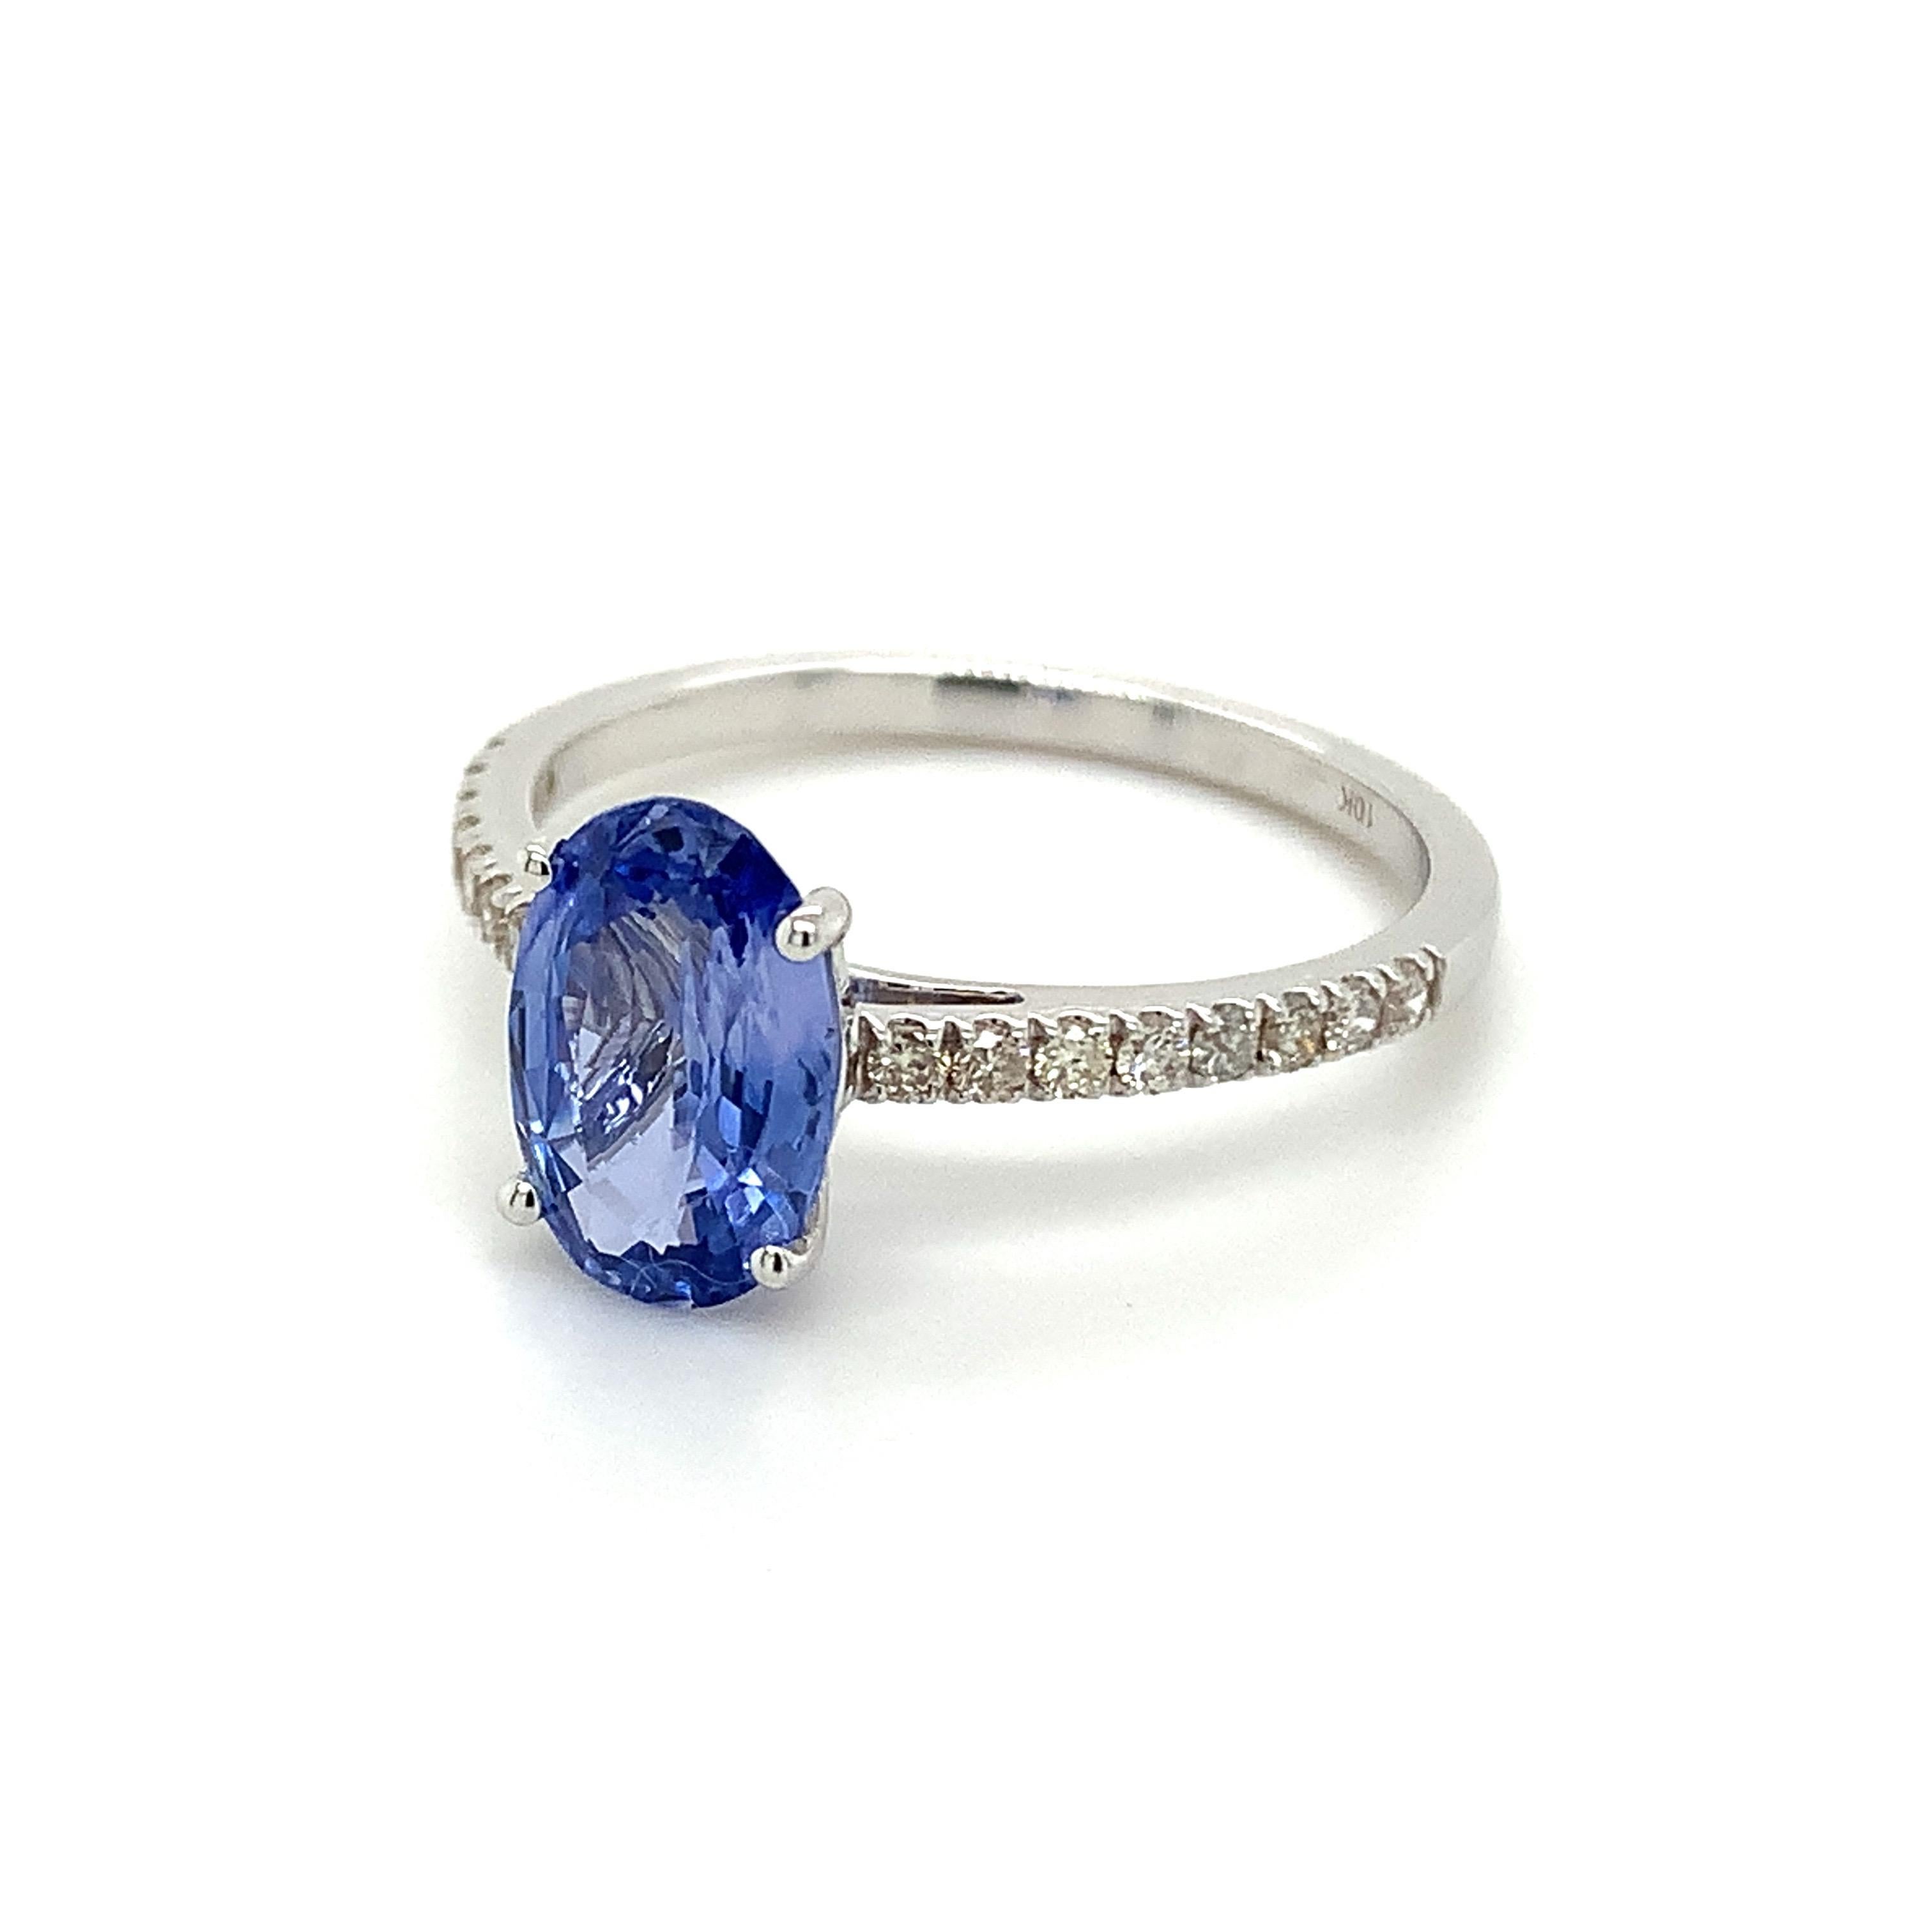 Saphir bleu de forme ovale magnifiquement travaillé dans une bague en or blanc 10K avec des diamants naturels.

Pierre de naissance très précieuse du mois de septembre, d'un bleu ravissant. On pense qu'ils apportent chance et fortune dans la vie.